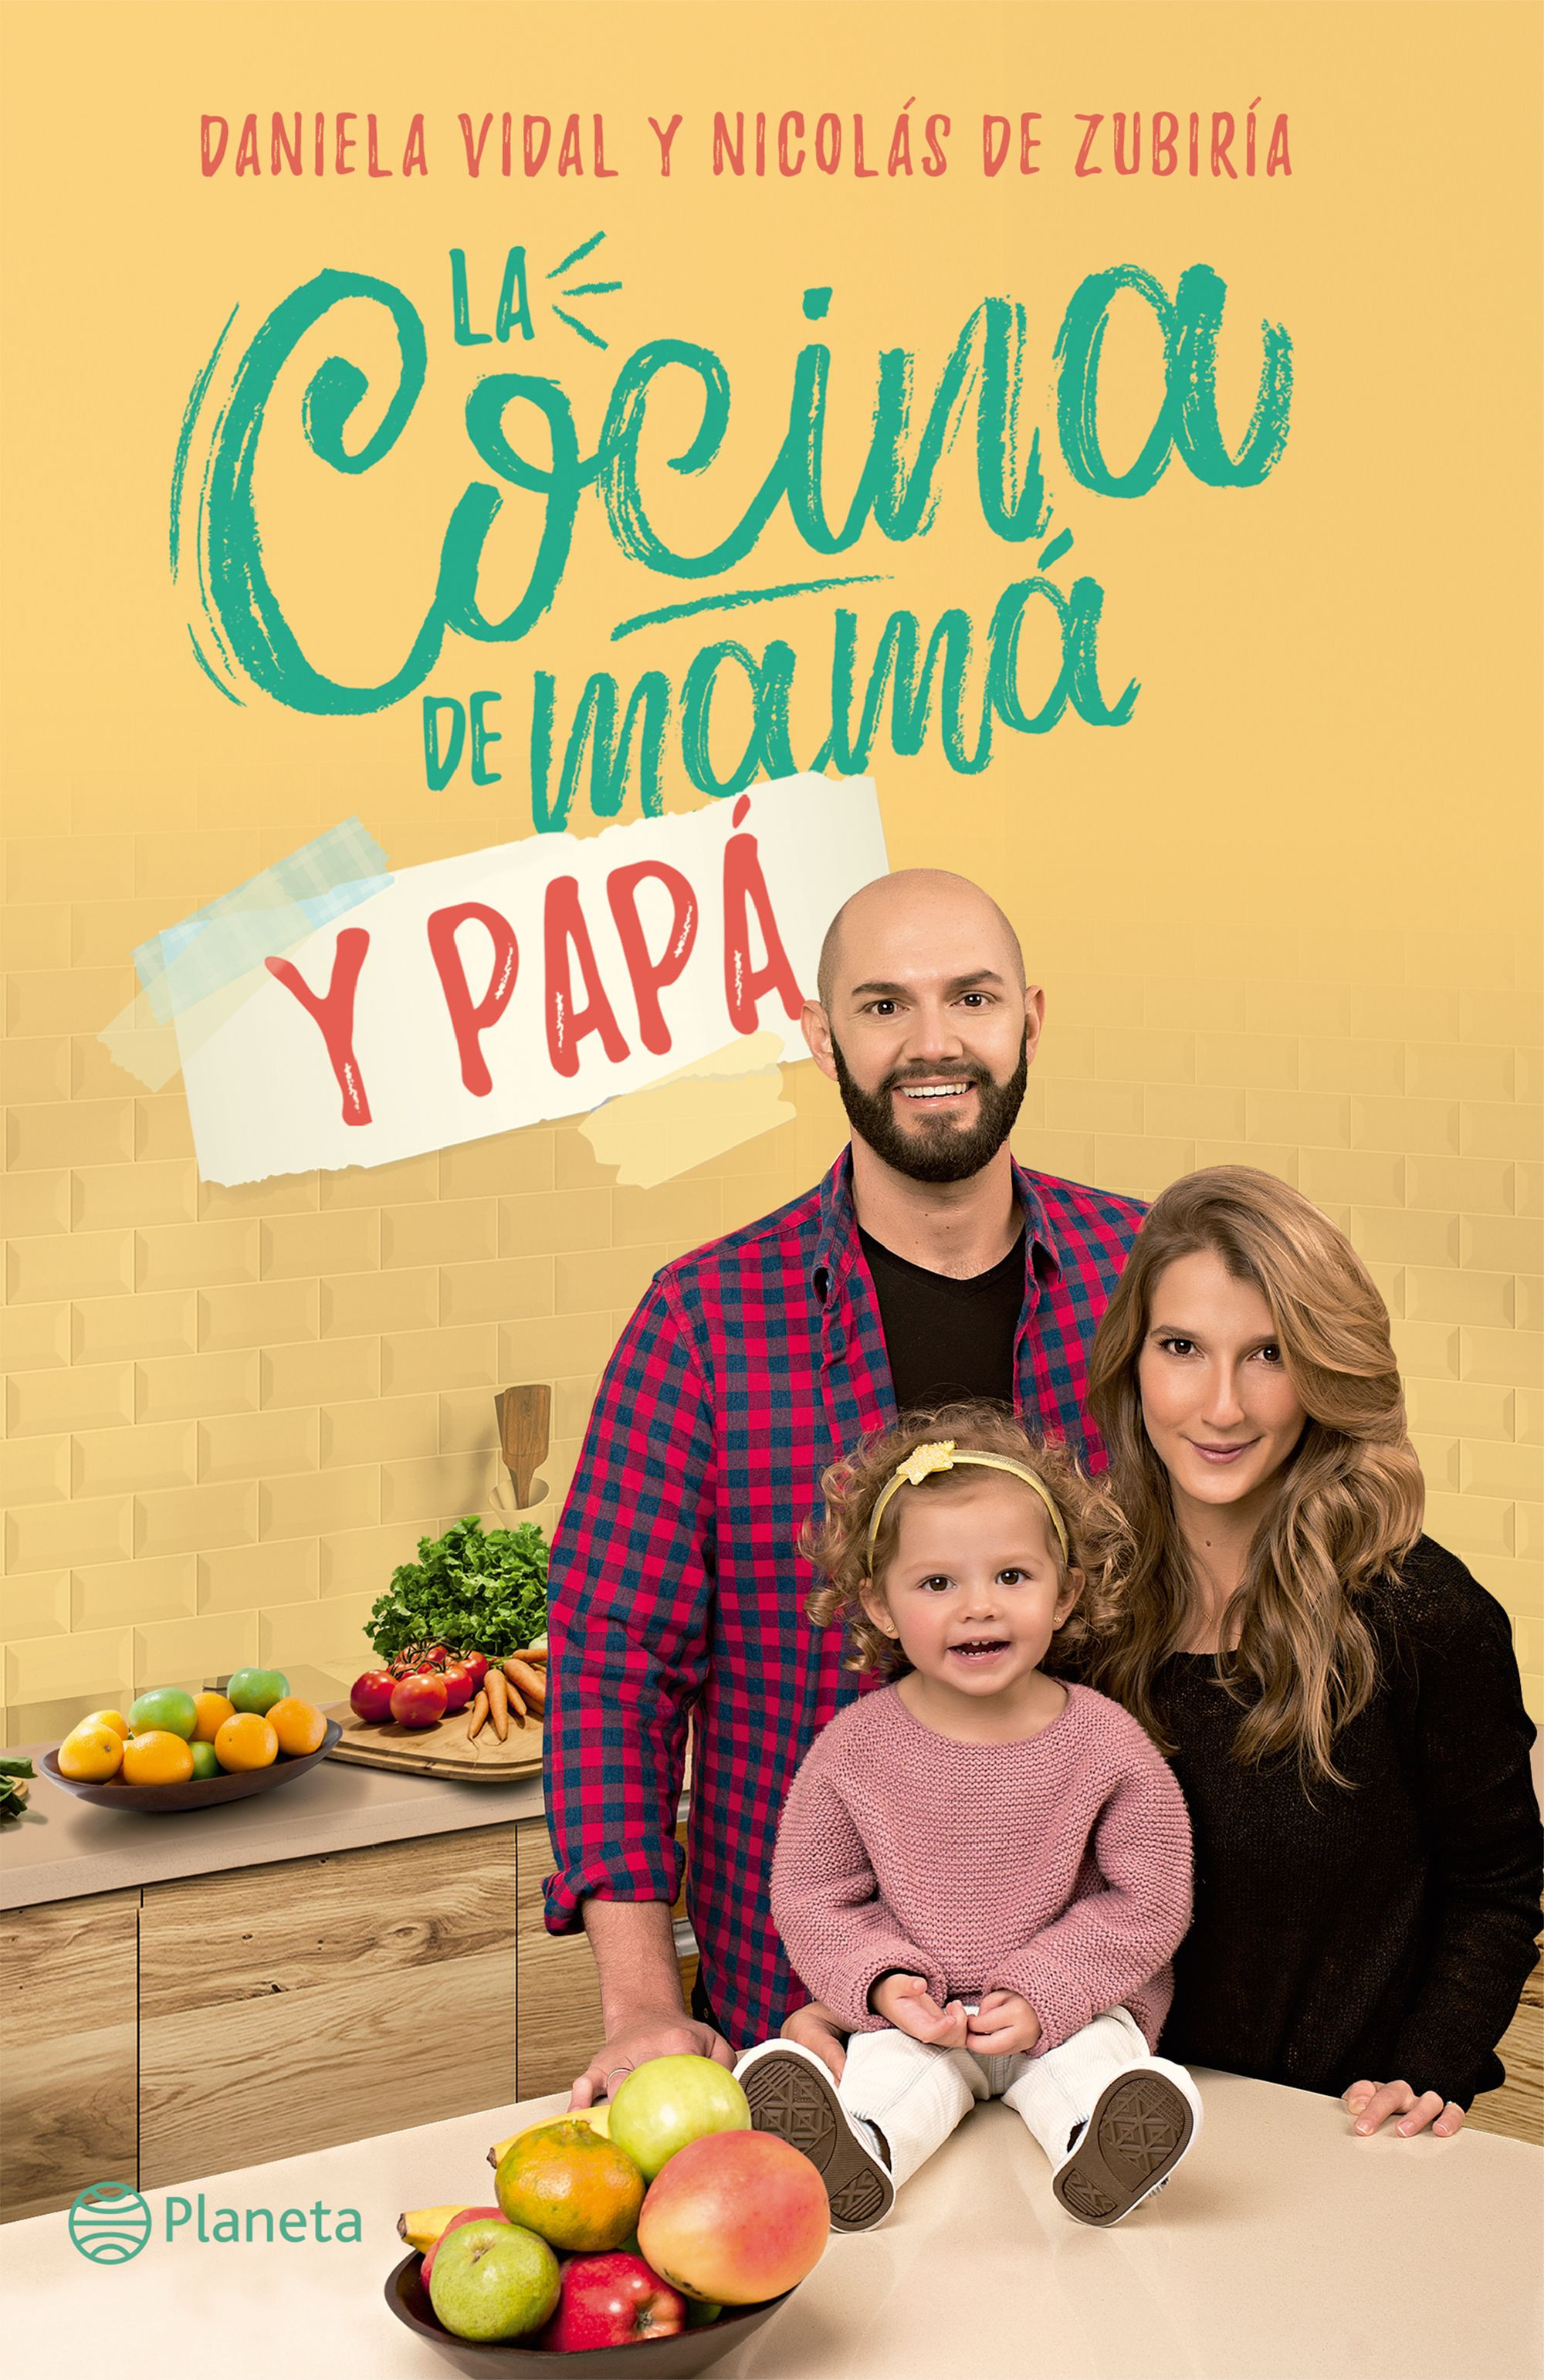 Imagen La Cocina de Mamá y Papá. Daniela Vidal - Nicolás de Zubiria 1